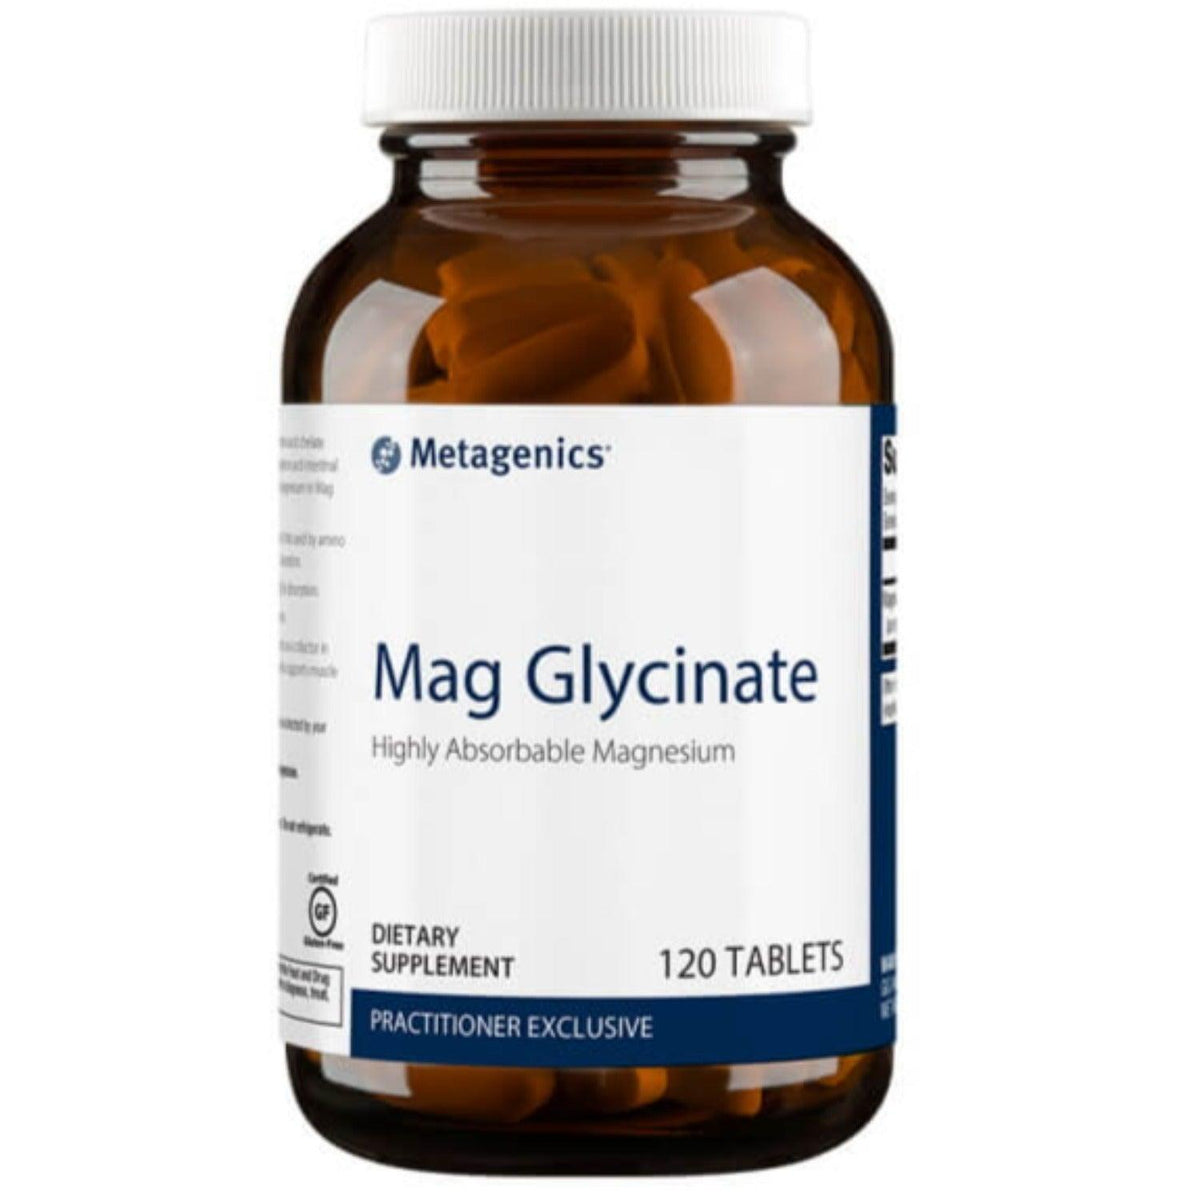 Metagenics Mag Glycinate (Magnesium) 120 Tabs Minerals - Magnesium at Village Vitamin Store